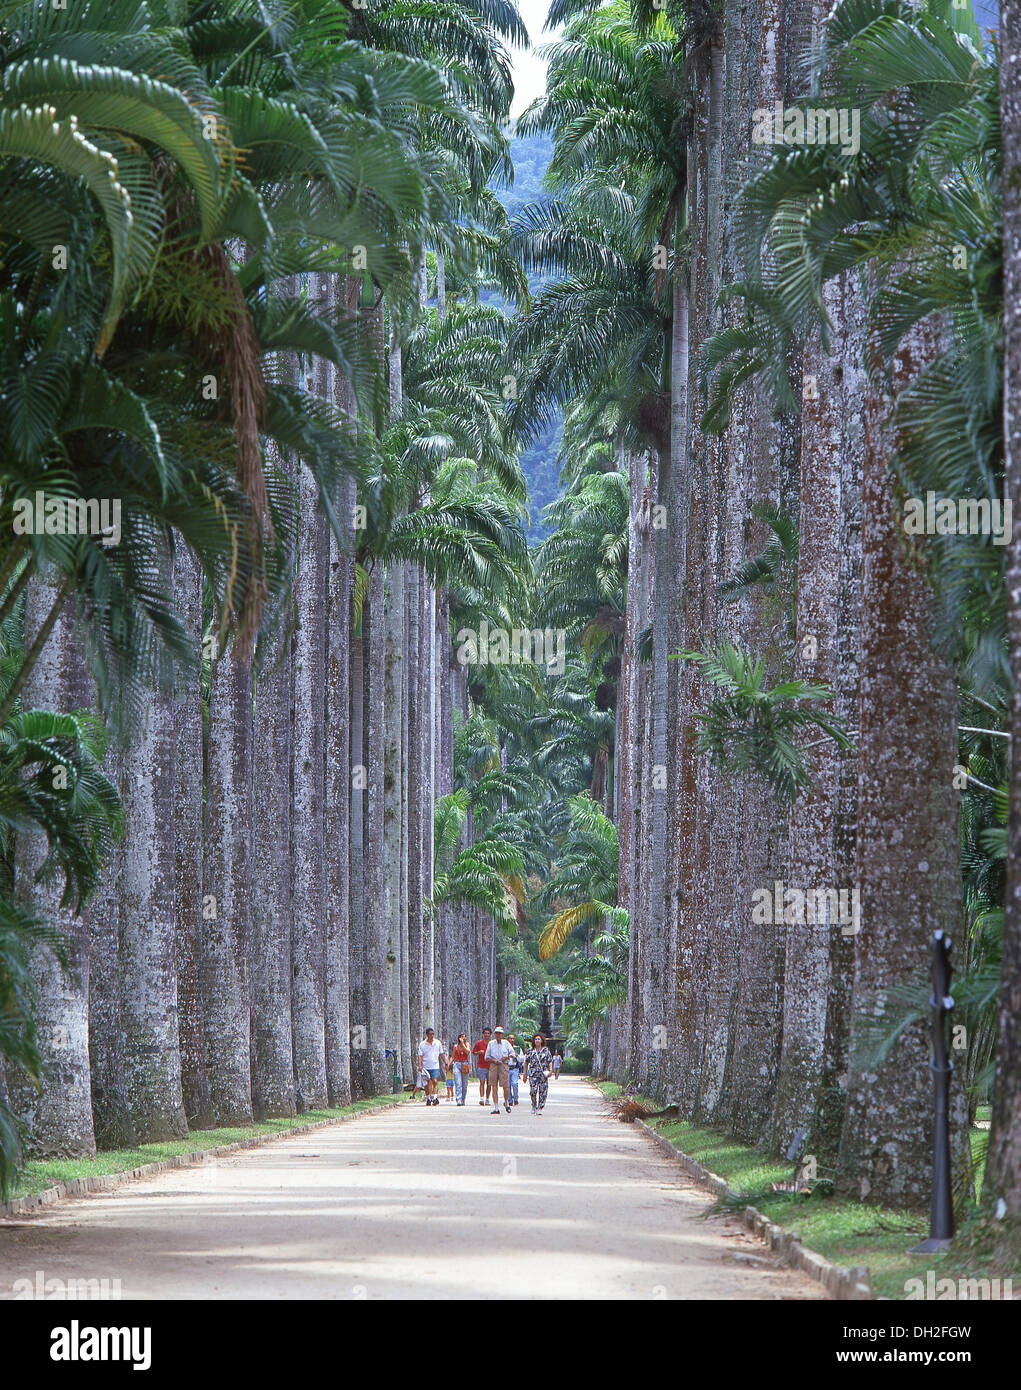 Avenue des palmiers, Jardim Botânico do Rio de Janeiro, Rio de Janeiro, Brésil Banque D'Images